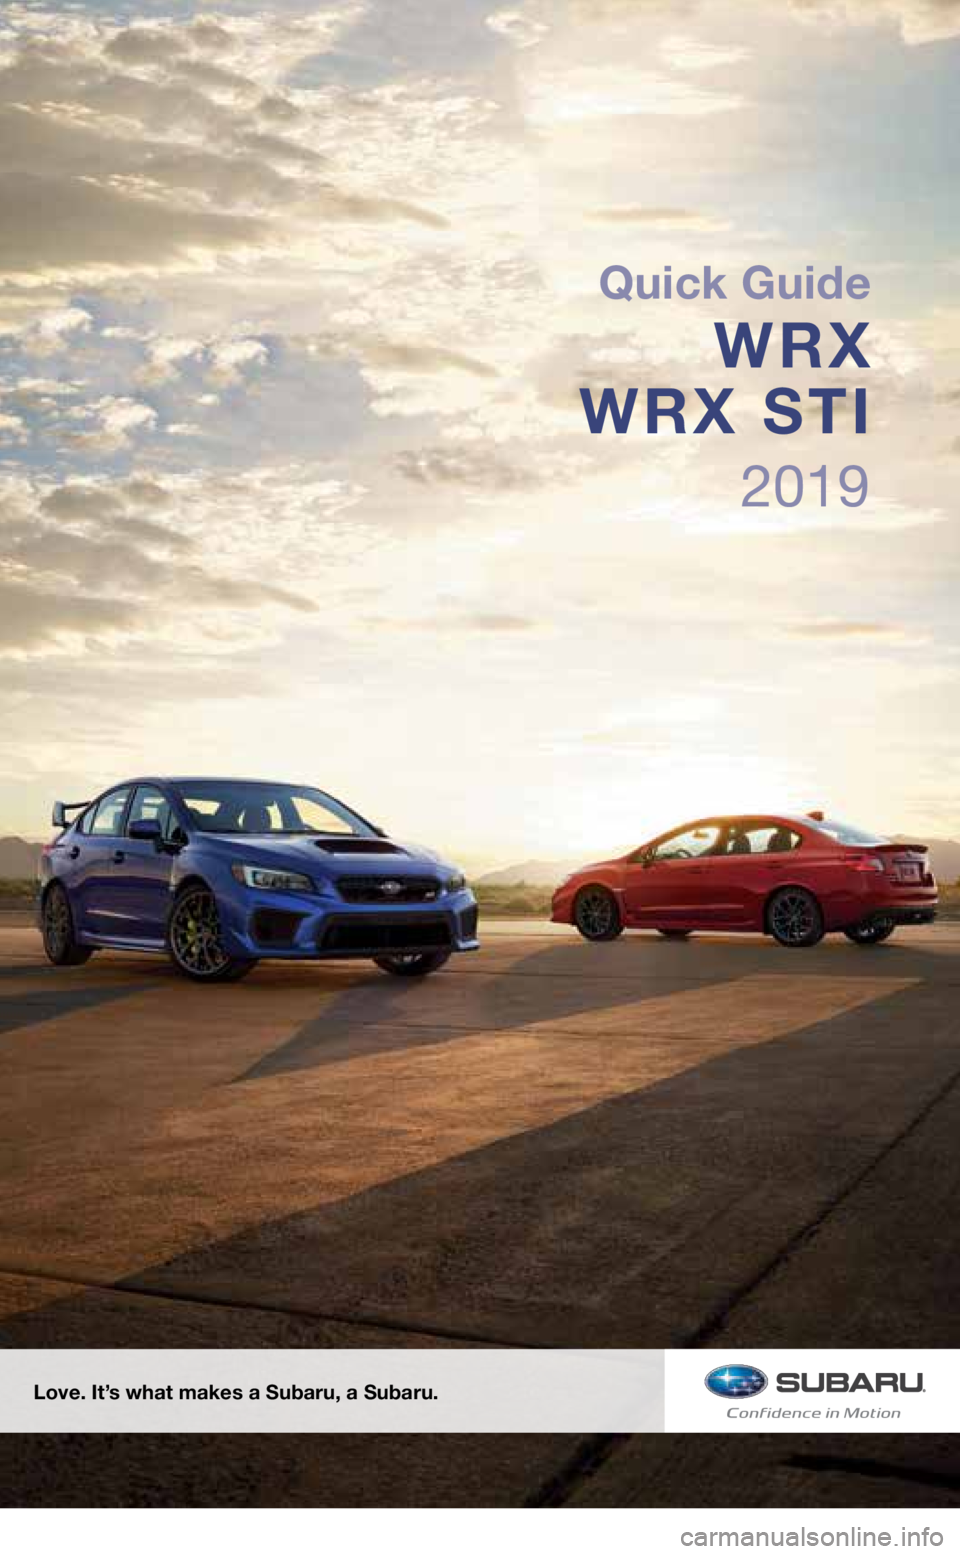 SUBARU WRX 2019  Quick Guide 2019
Love. It’s what makes a Subaru, a Subaru.
Quick Guide
WRX 
WRX STI
3572136_19b_WRX_WRX_STI_QG_061118.indd   26/11/18   5:06 PM  